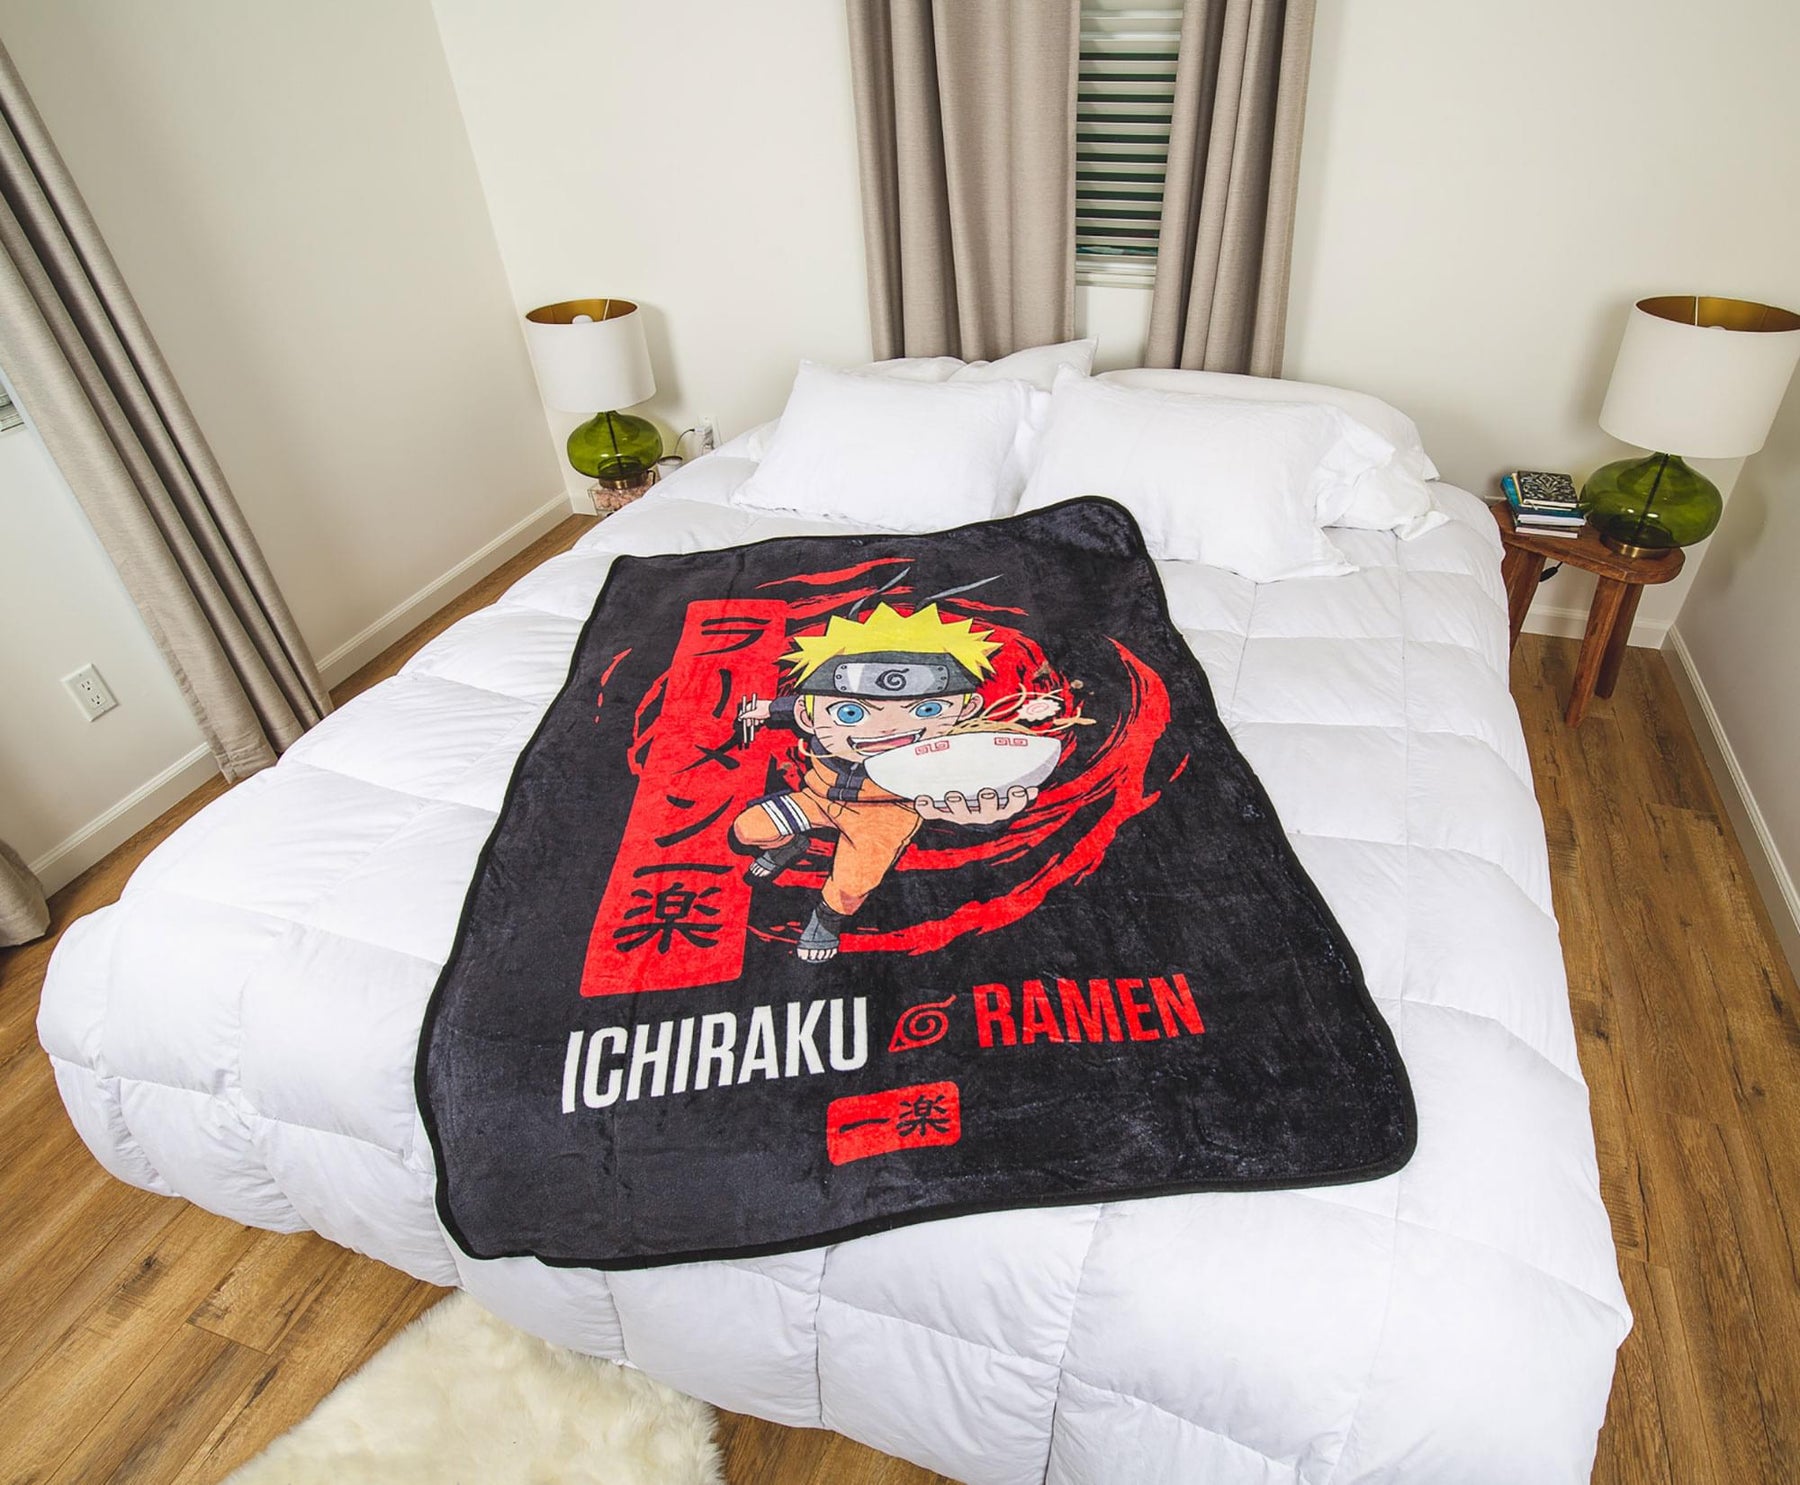 Naruto Shippuden Ichiraku Ramen Fleece Throw Blanket | 45 x 60 Inches